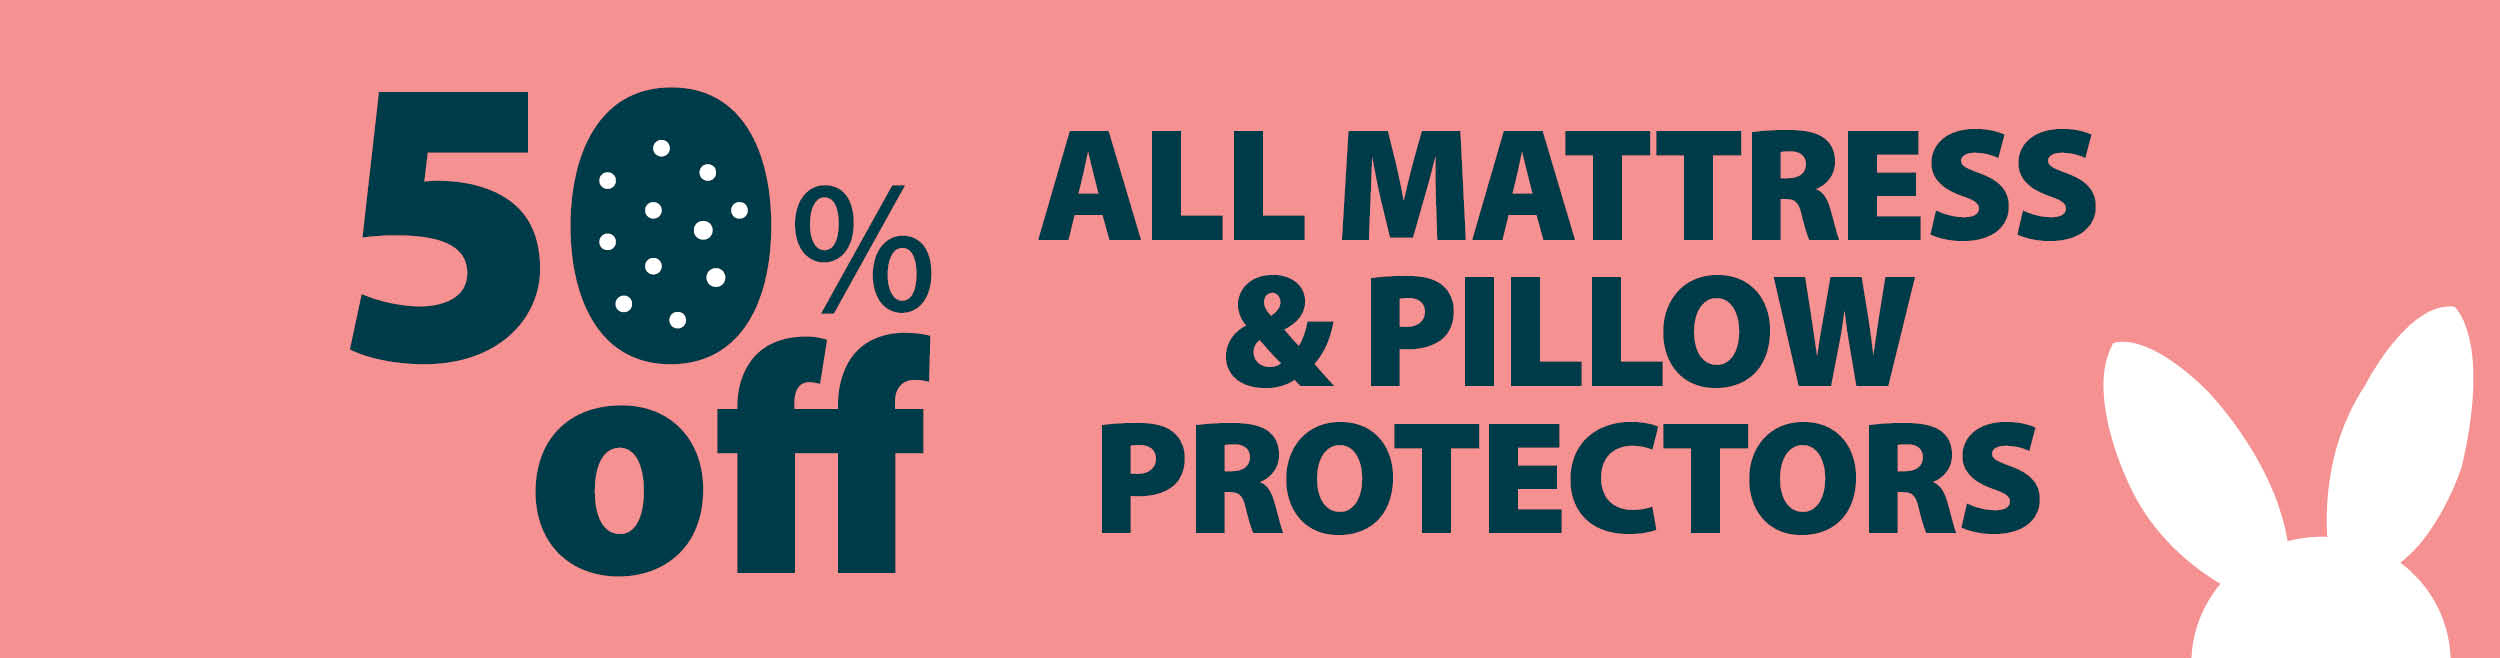 mattress protectors